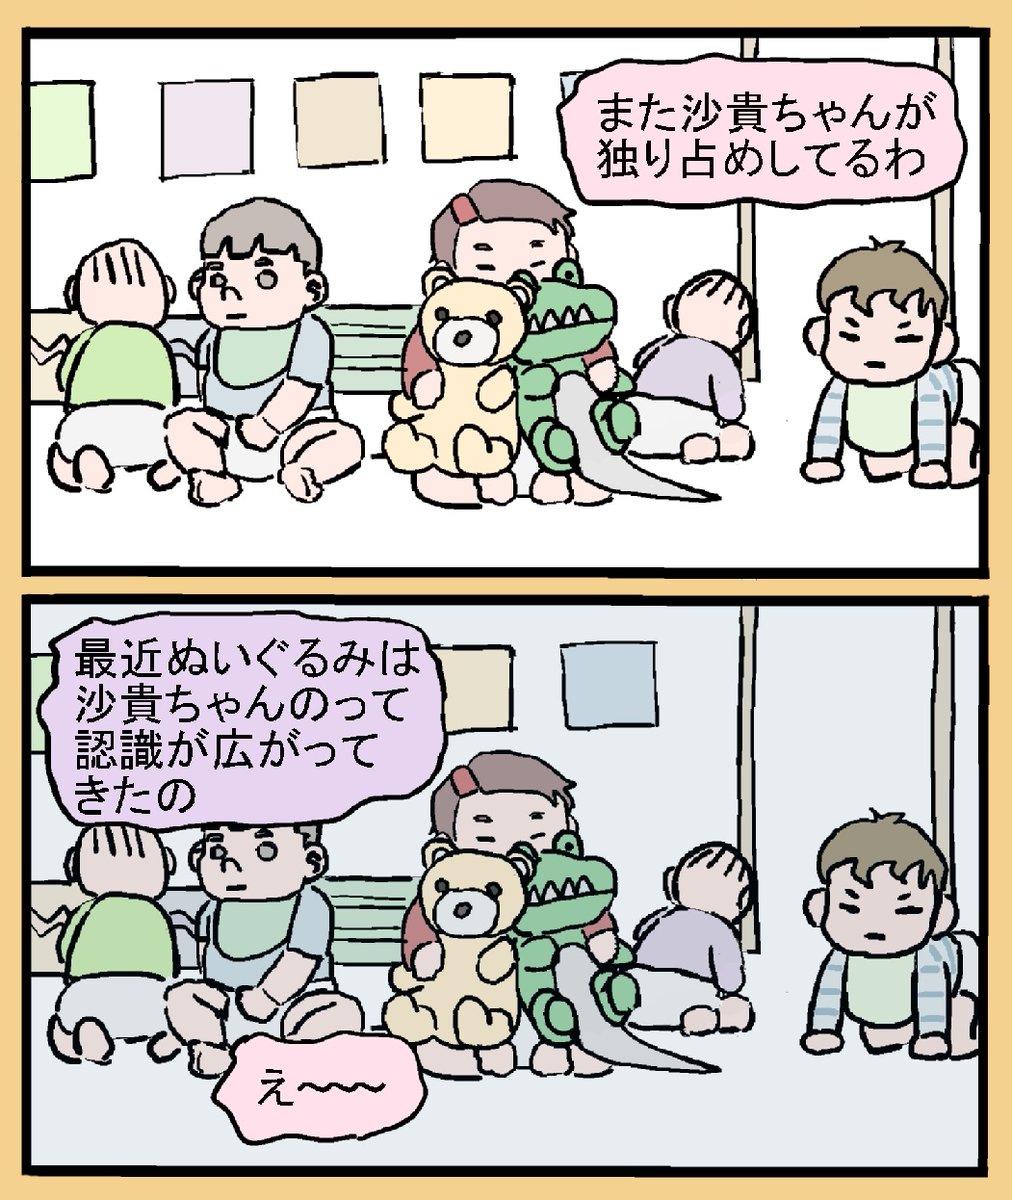 保育の漫画
「ワニのぬいぐるみ」
前編 